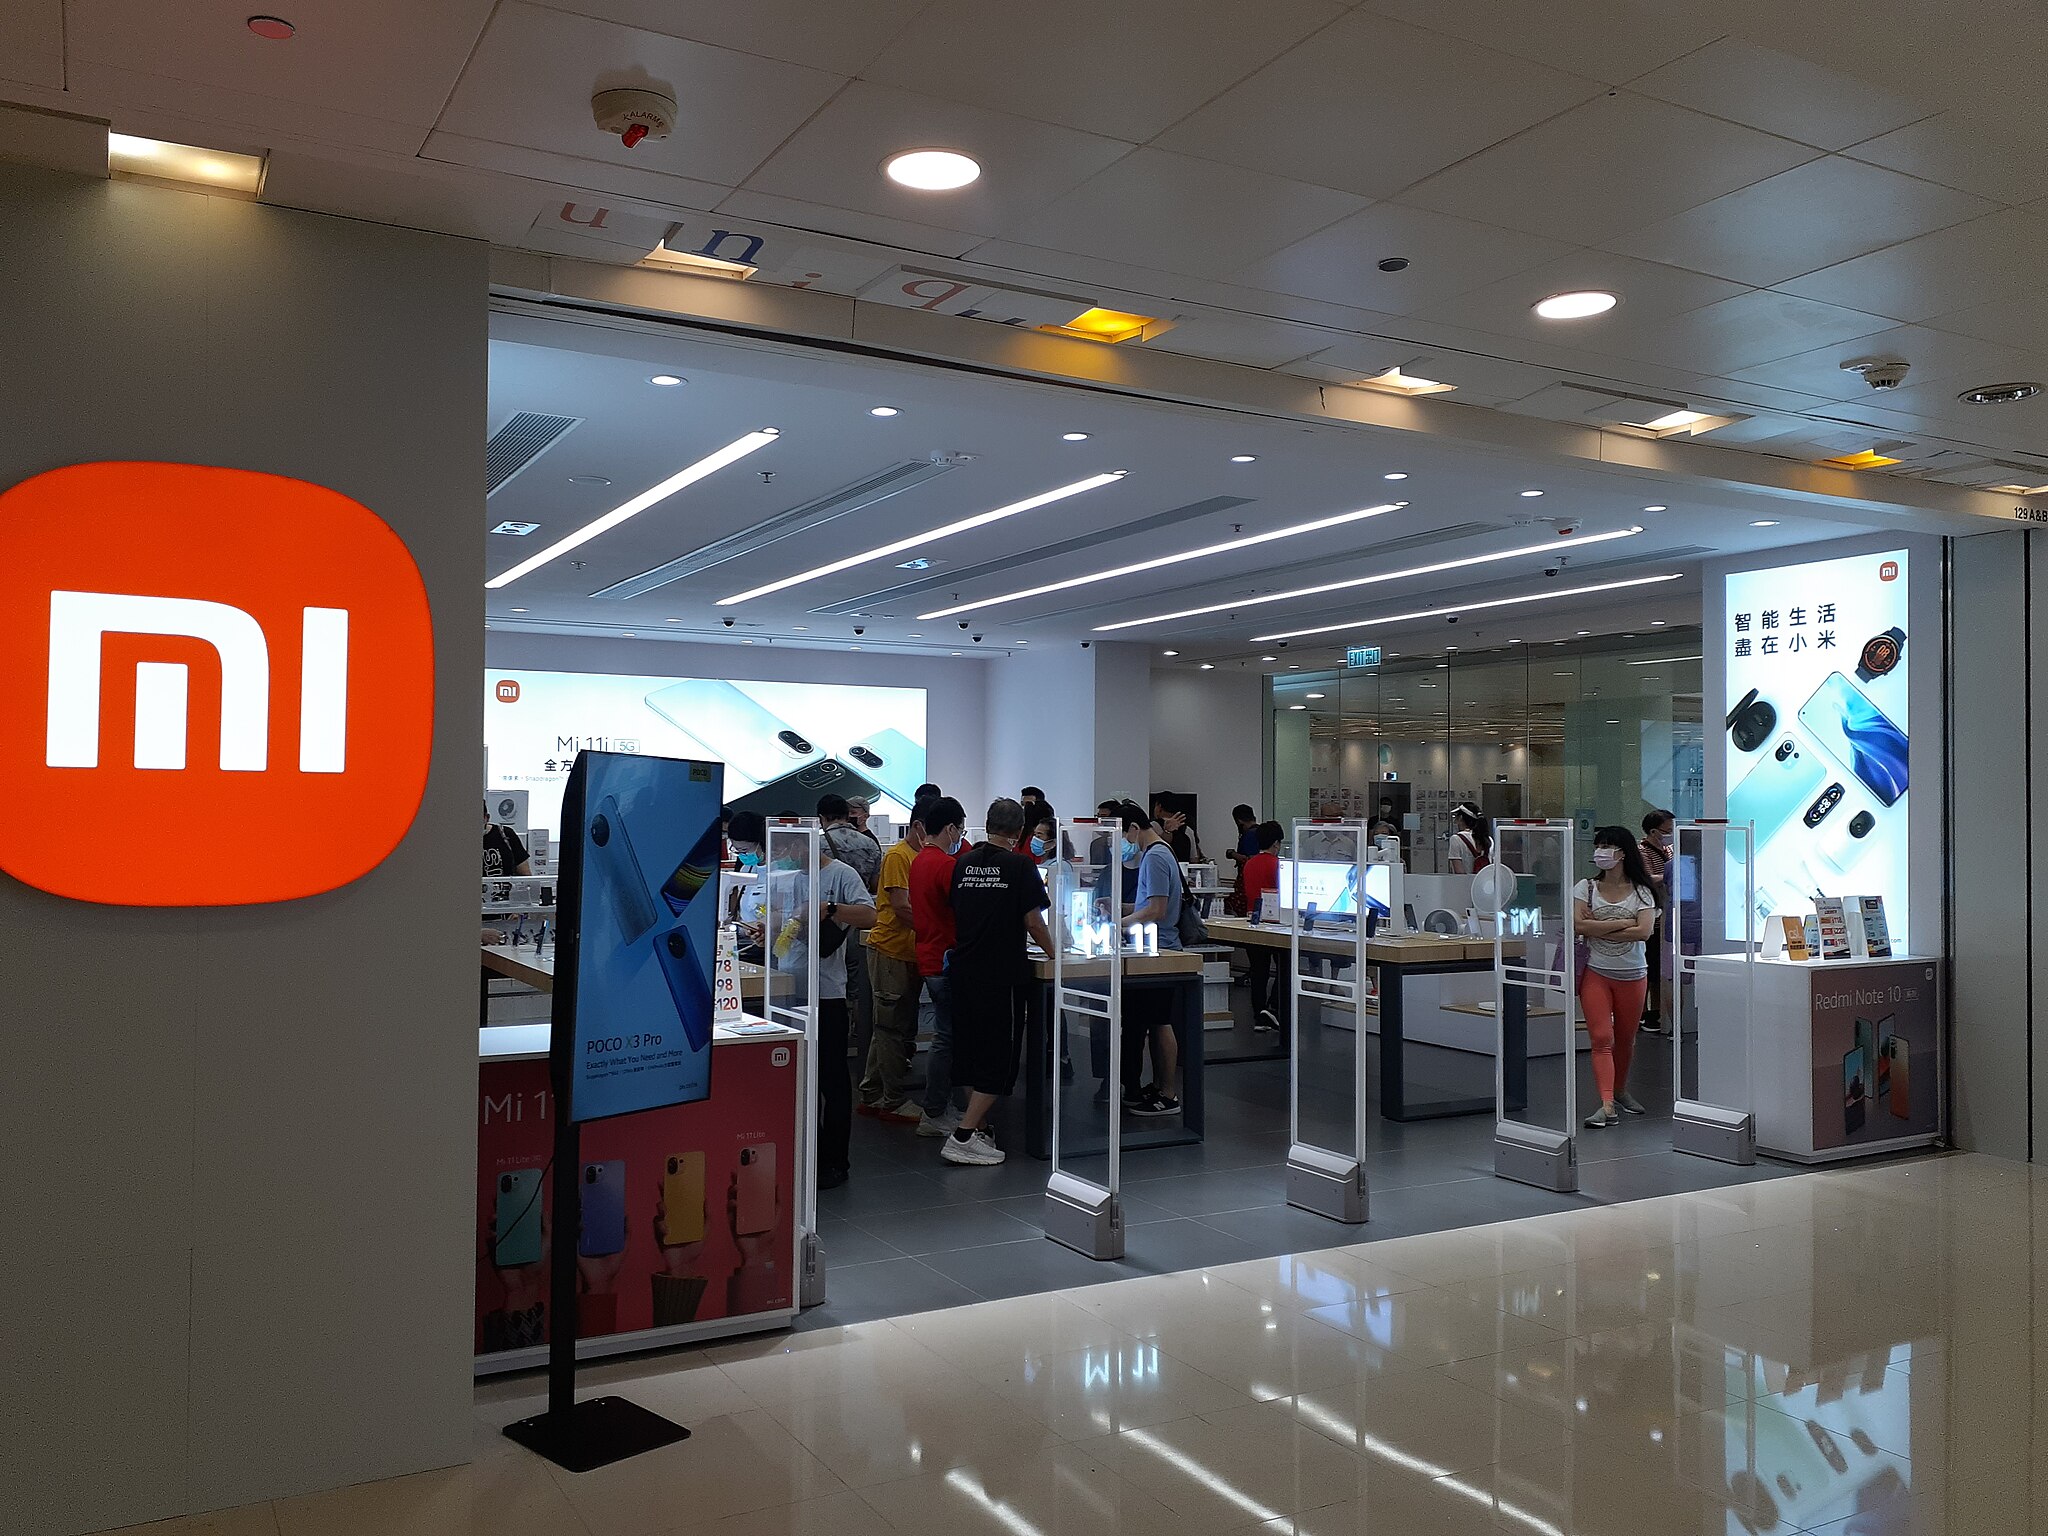 Na fotografii widać sklep z urządzeniami marki Xiaomi